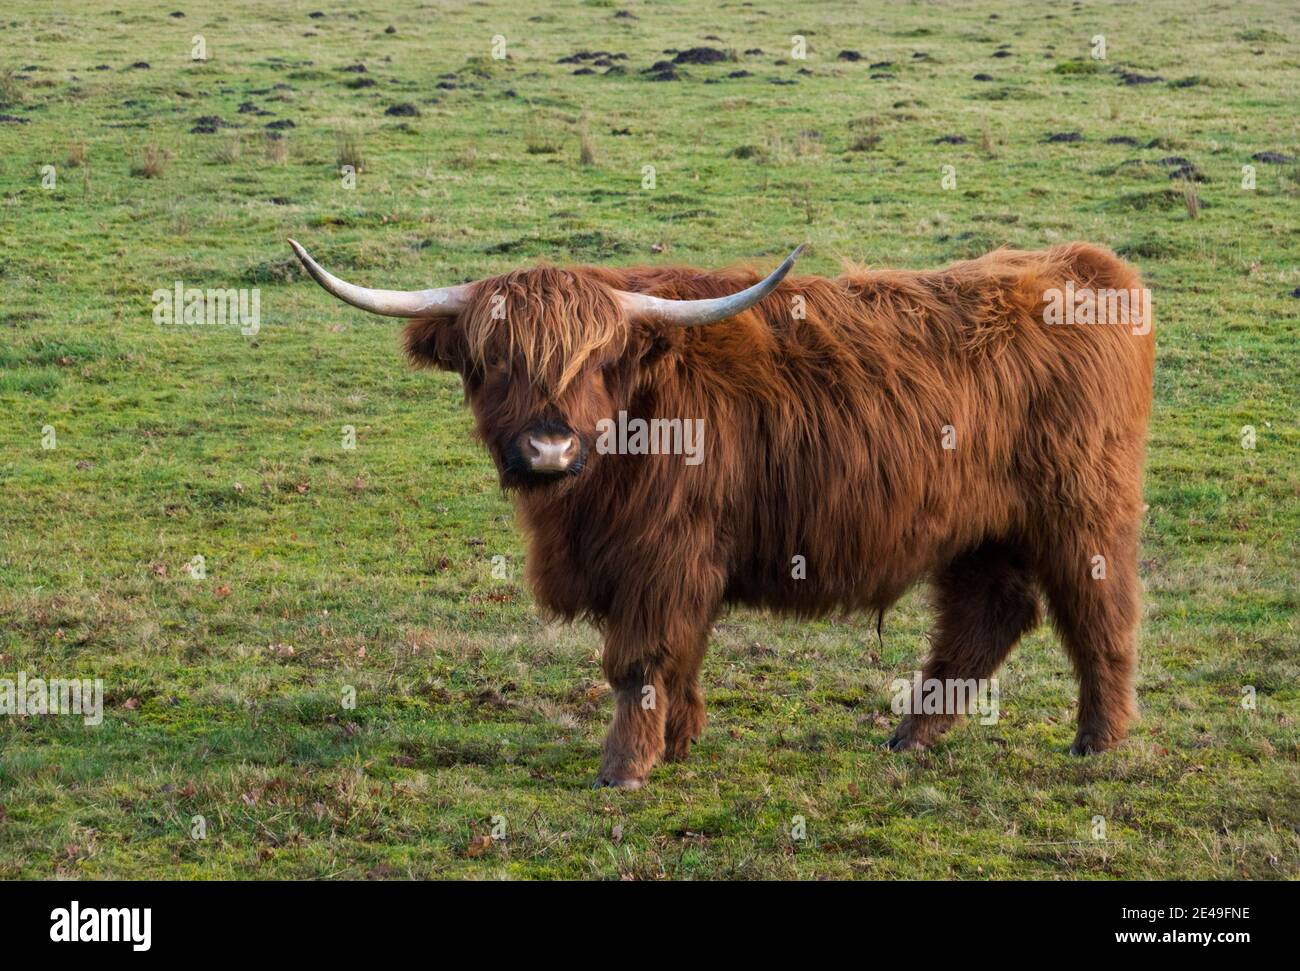 Vaca escocesa con pelo largo y cuernos largos visto desde un lado Foto de stock